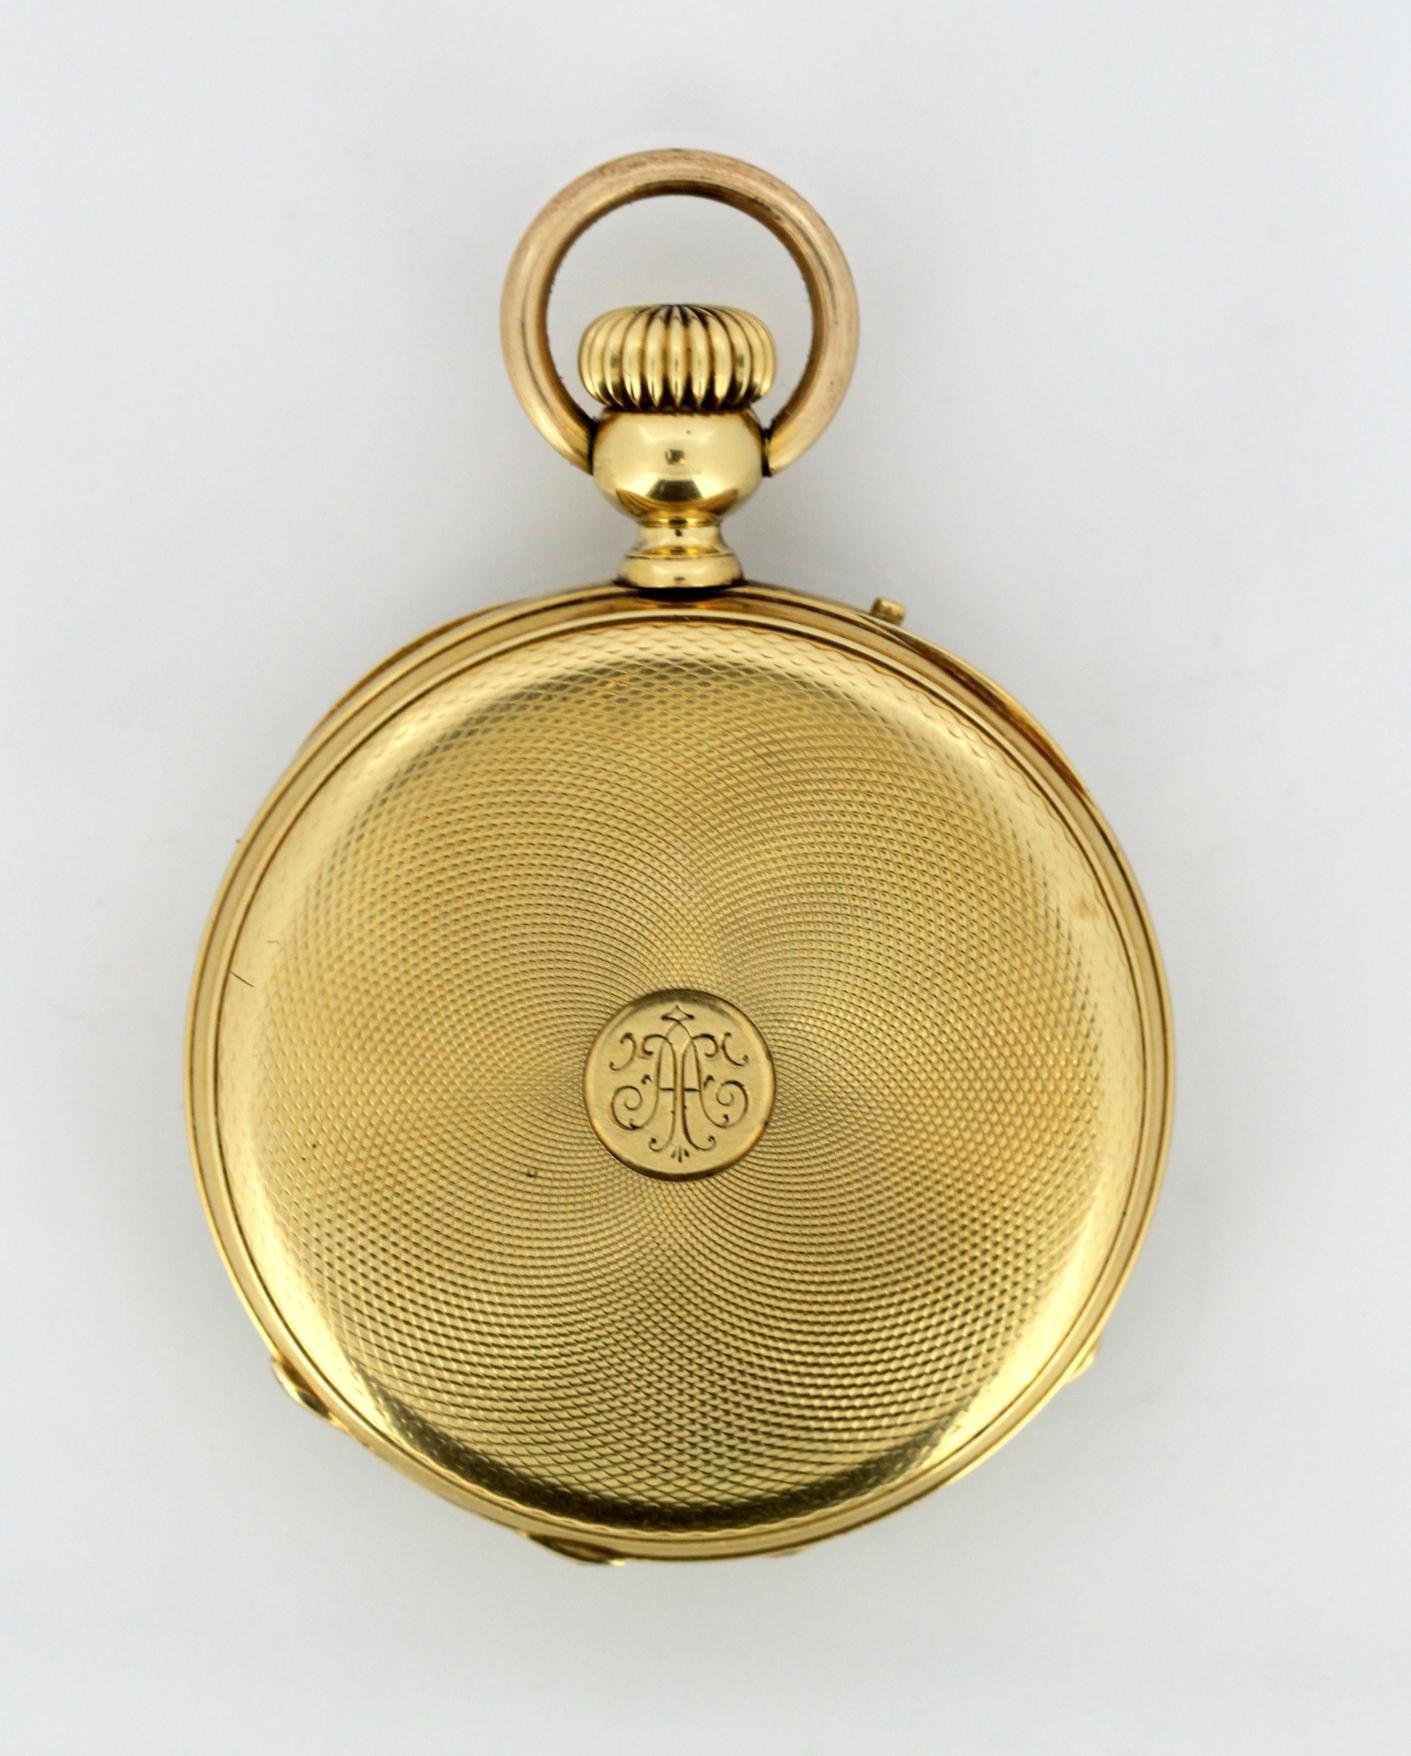 Women's or Men's Antique Swiss 18 Karat Yellow Gold Pocket Watch by Amore Spiral Breguet, 1920s